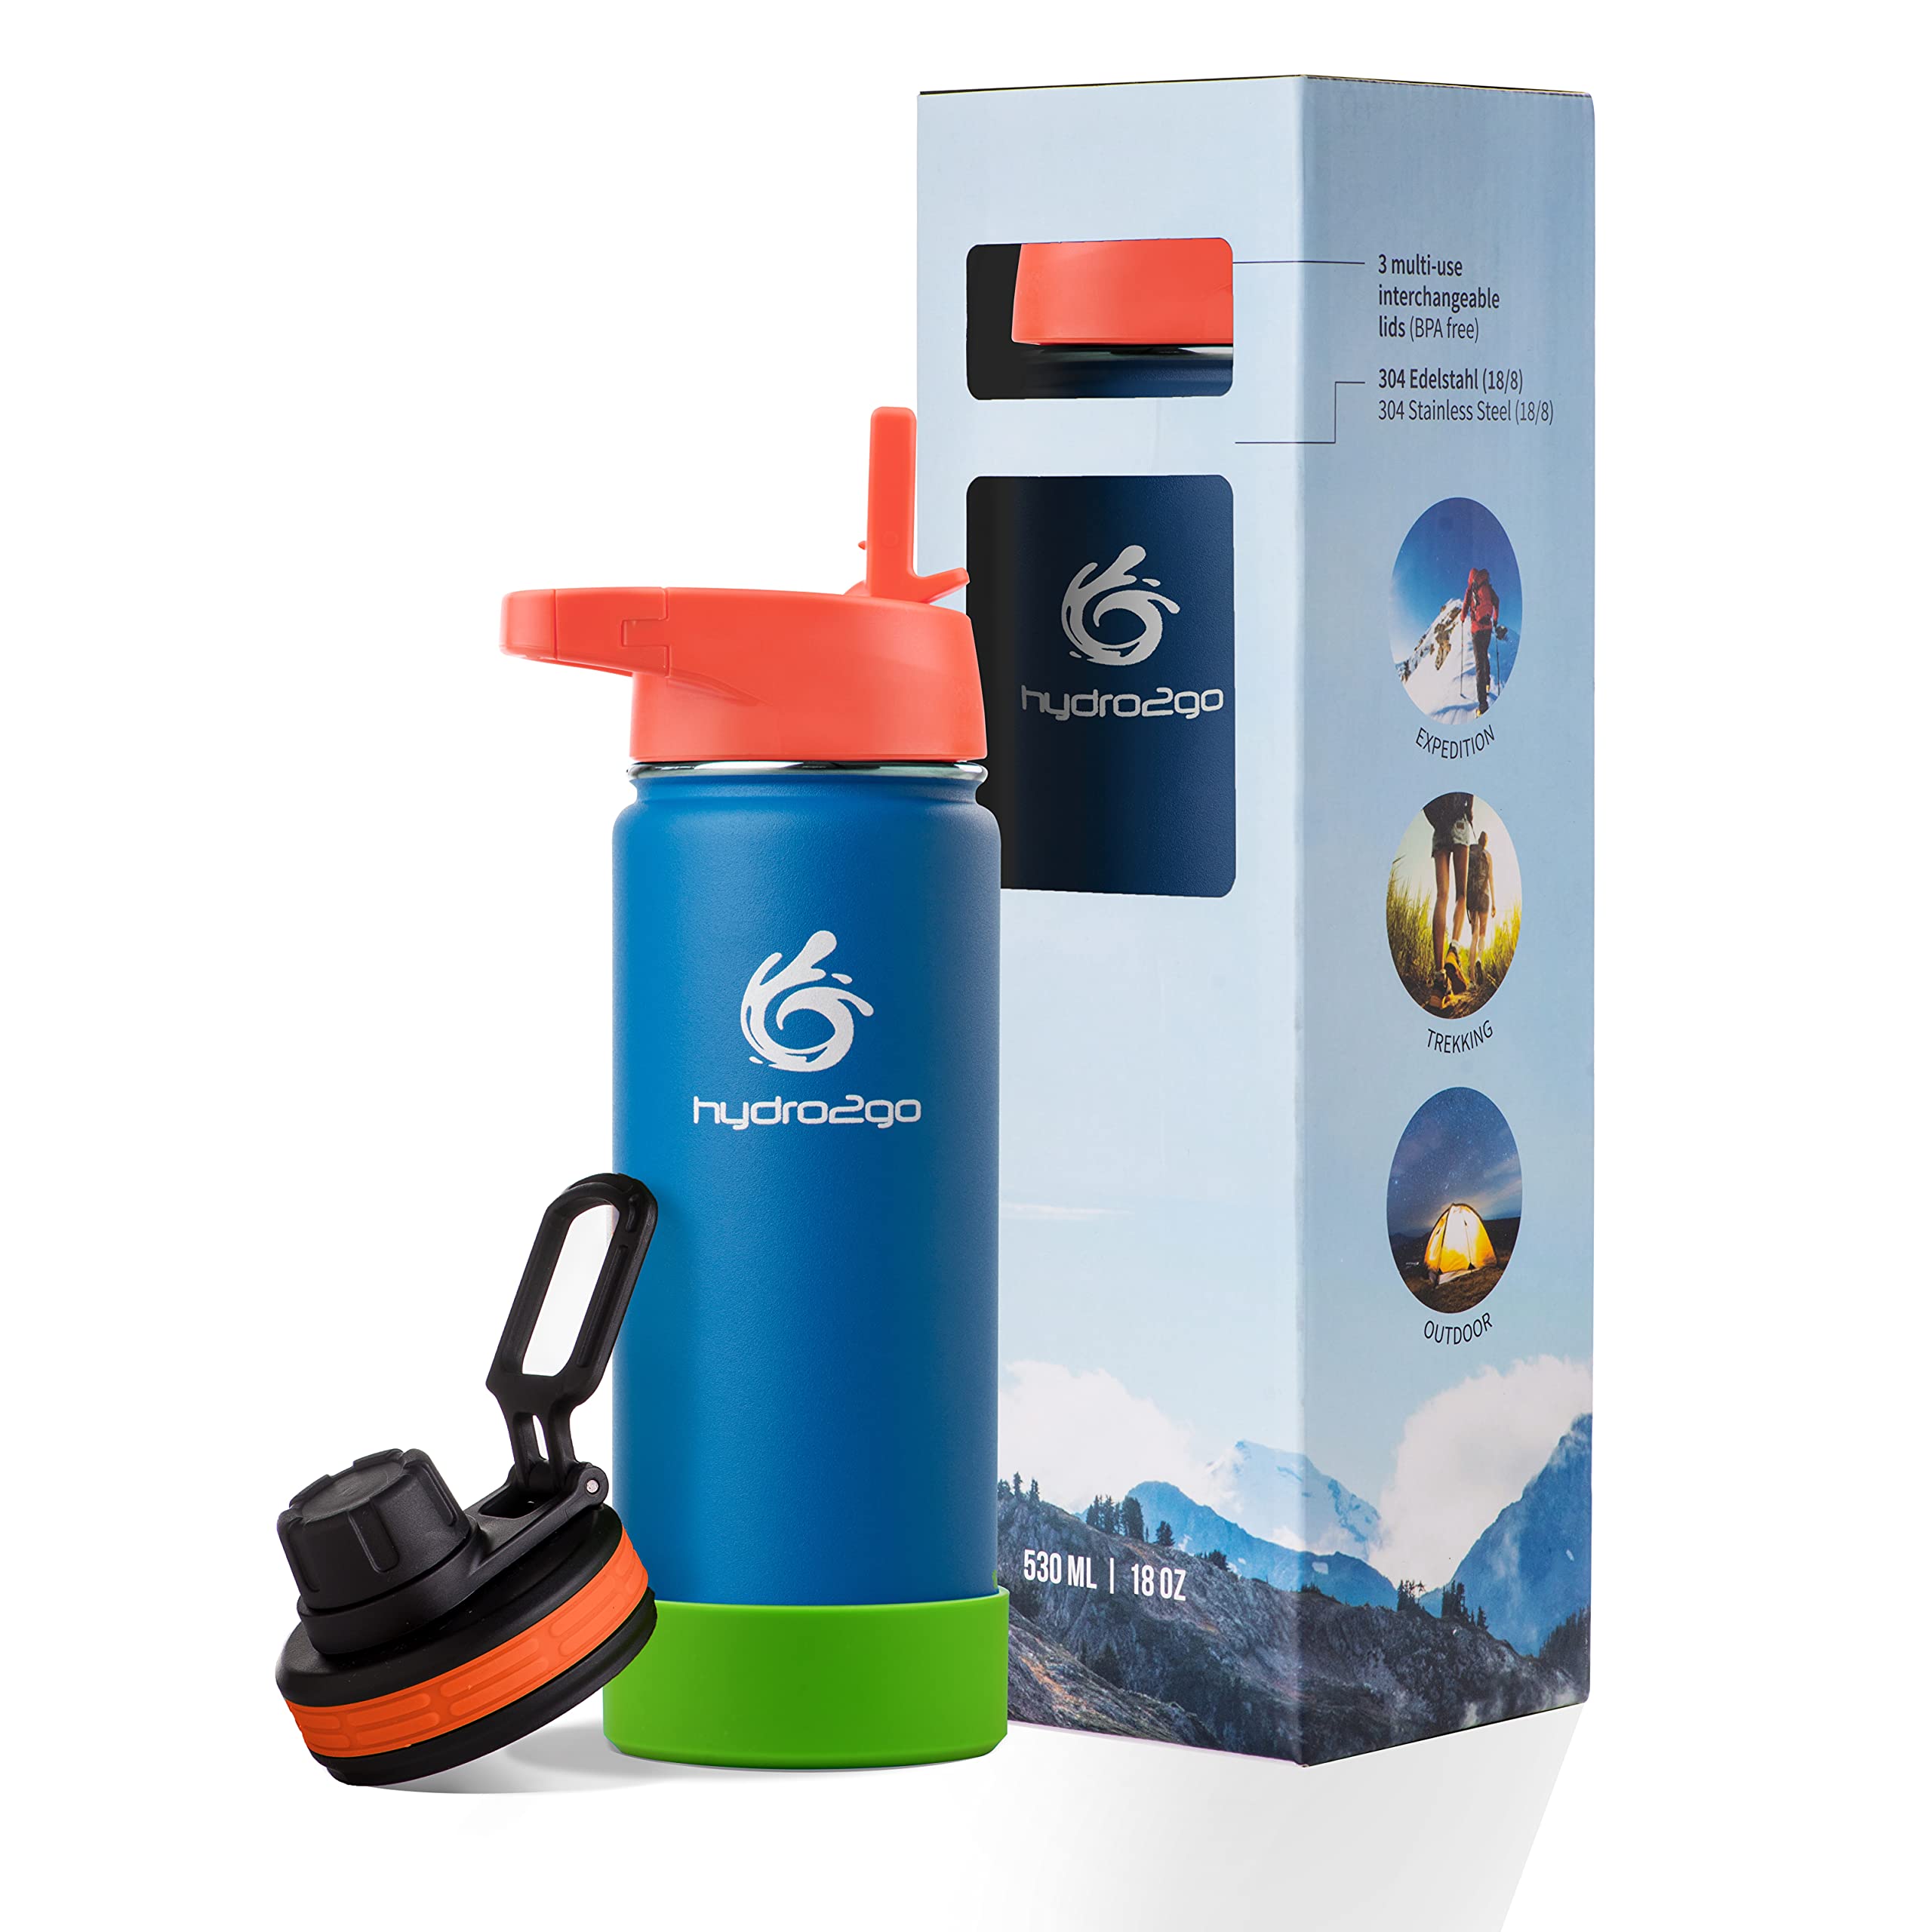 hydro2go ® Kinder Trinkflasche aus Edelstahl - 500ml | Thermo Edelstahlflasche BPA-frei für Kinder + 2 Trinkverschlüsse | 100% Auslaufsichere Kinderflasche | Strohhalm- und Sport-Verschluss